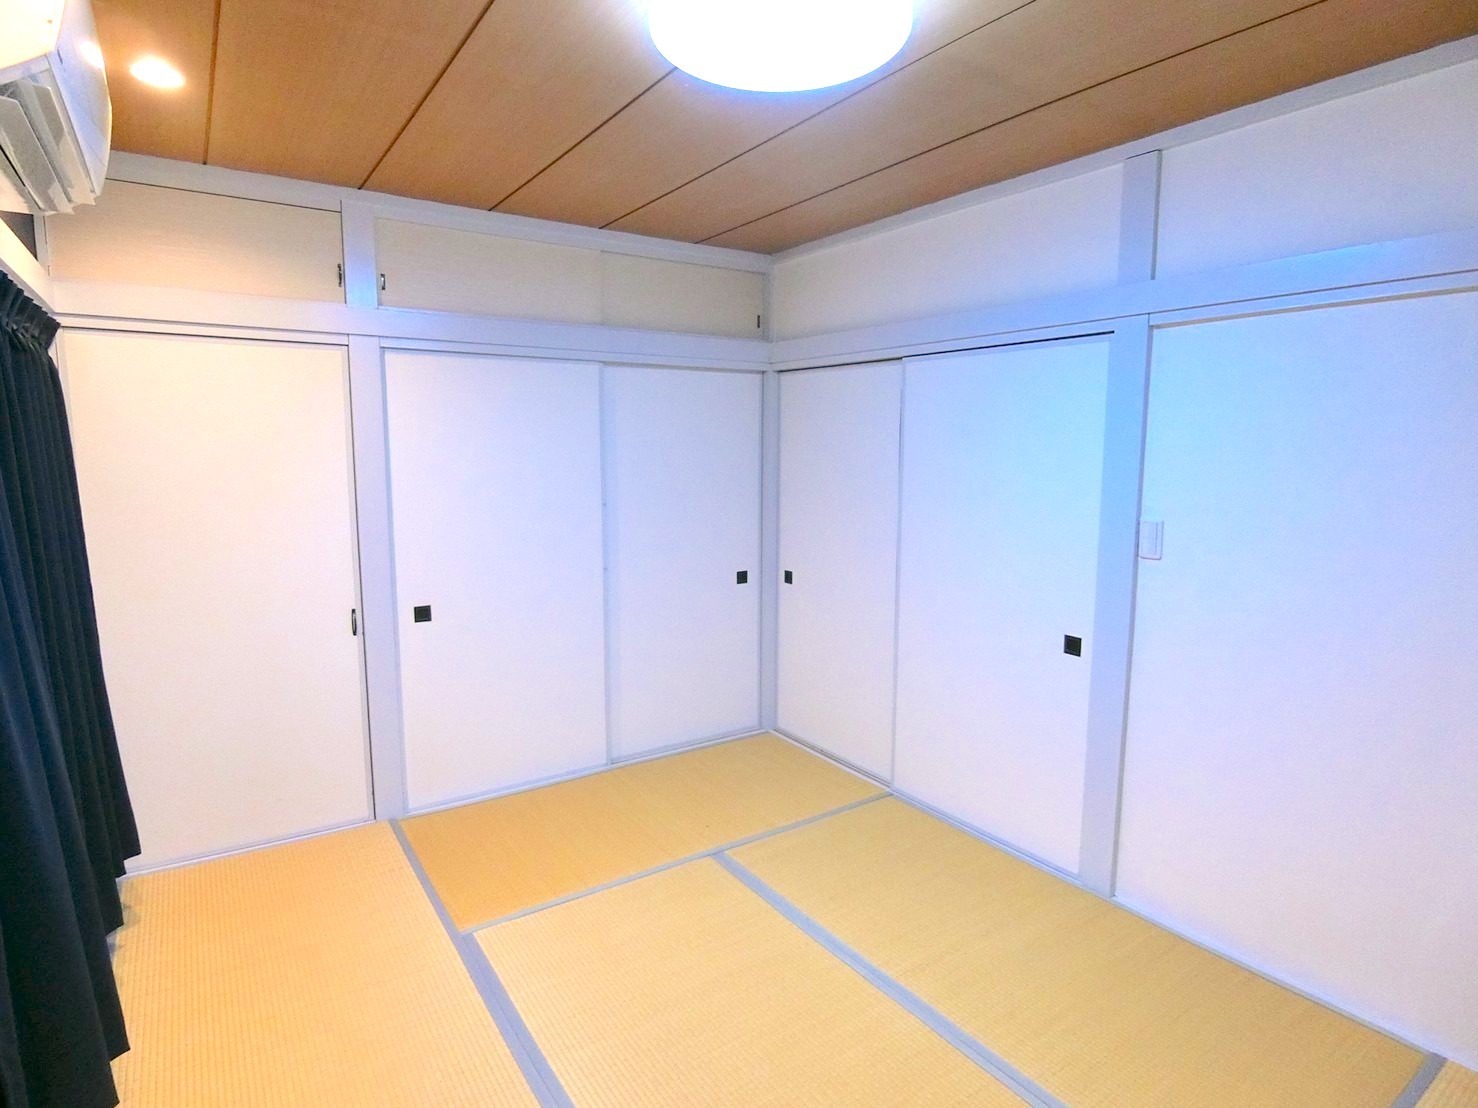 【フタバハイツ201】梅屋敷徒歩5分!リノベーションオープンの5人部屋!